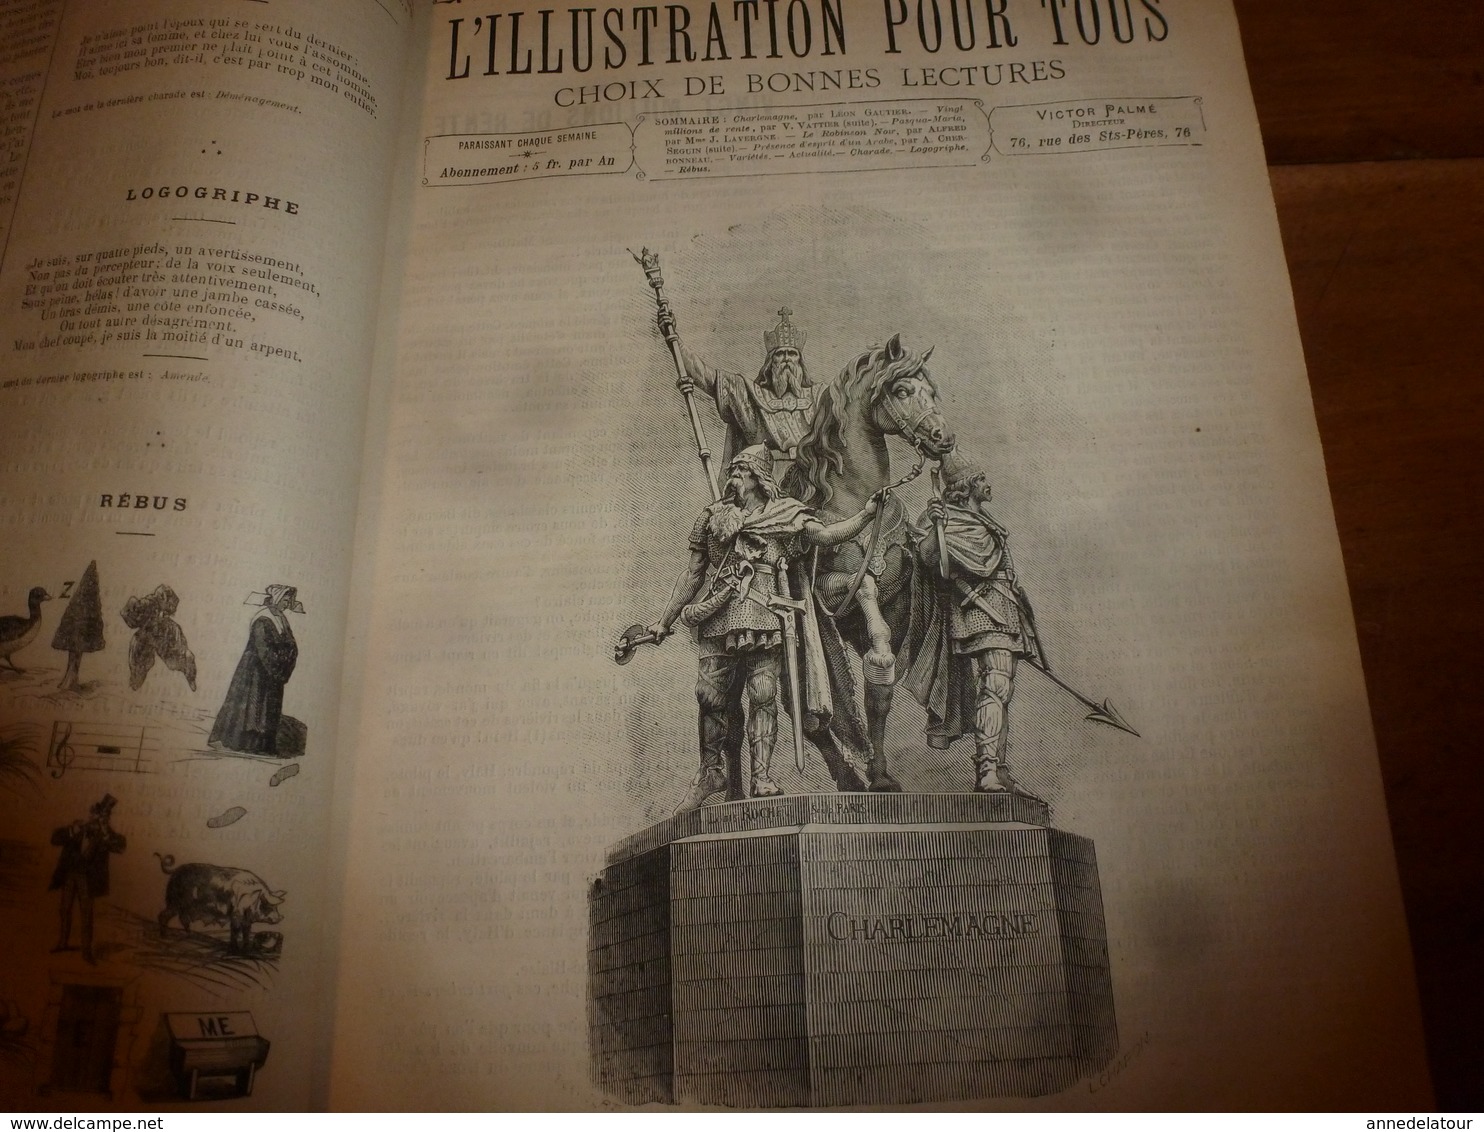 Rare 1882-83 :L'ILLUSTRATION POUR TOUS > Effets du hachiche;Les chiens d'arrêt;Duguesclin;Jeanne d'Arc;Sorcellerie; etc